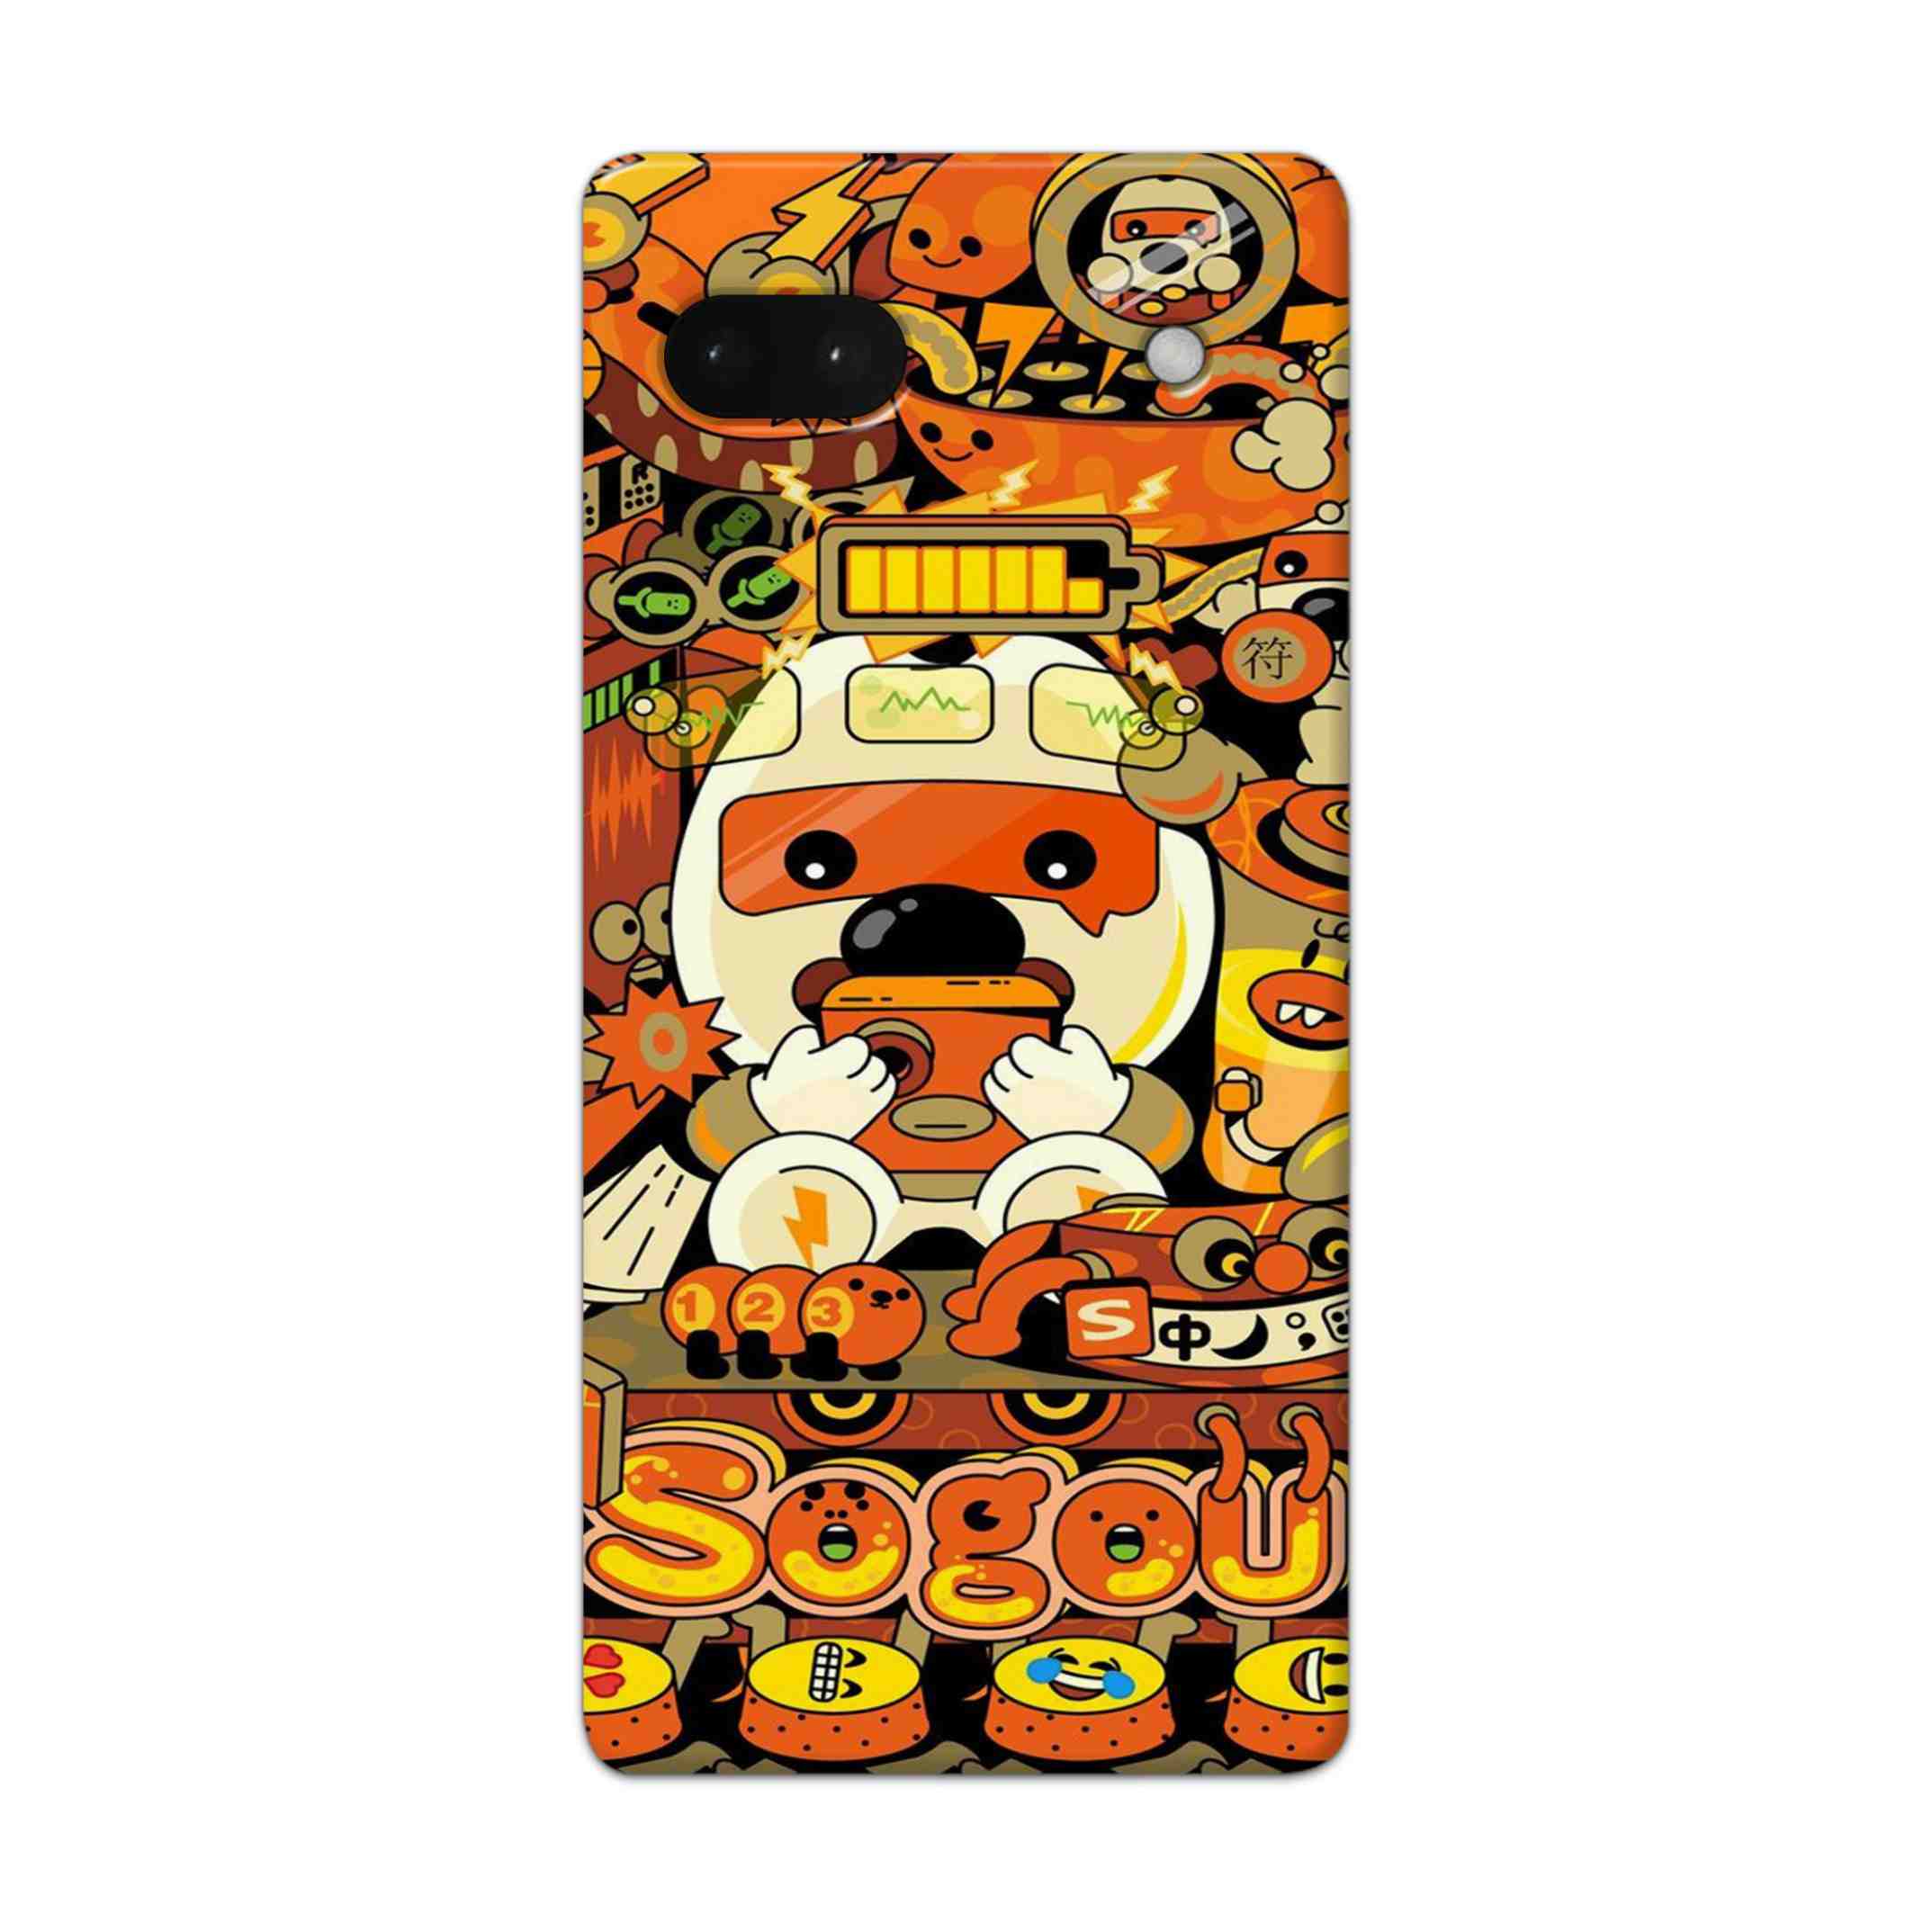 Buy Sogou Hard Back Mobile Phone Case Cover For Google Pixel 6a Online